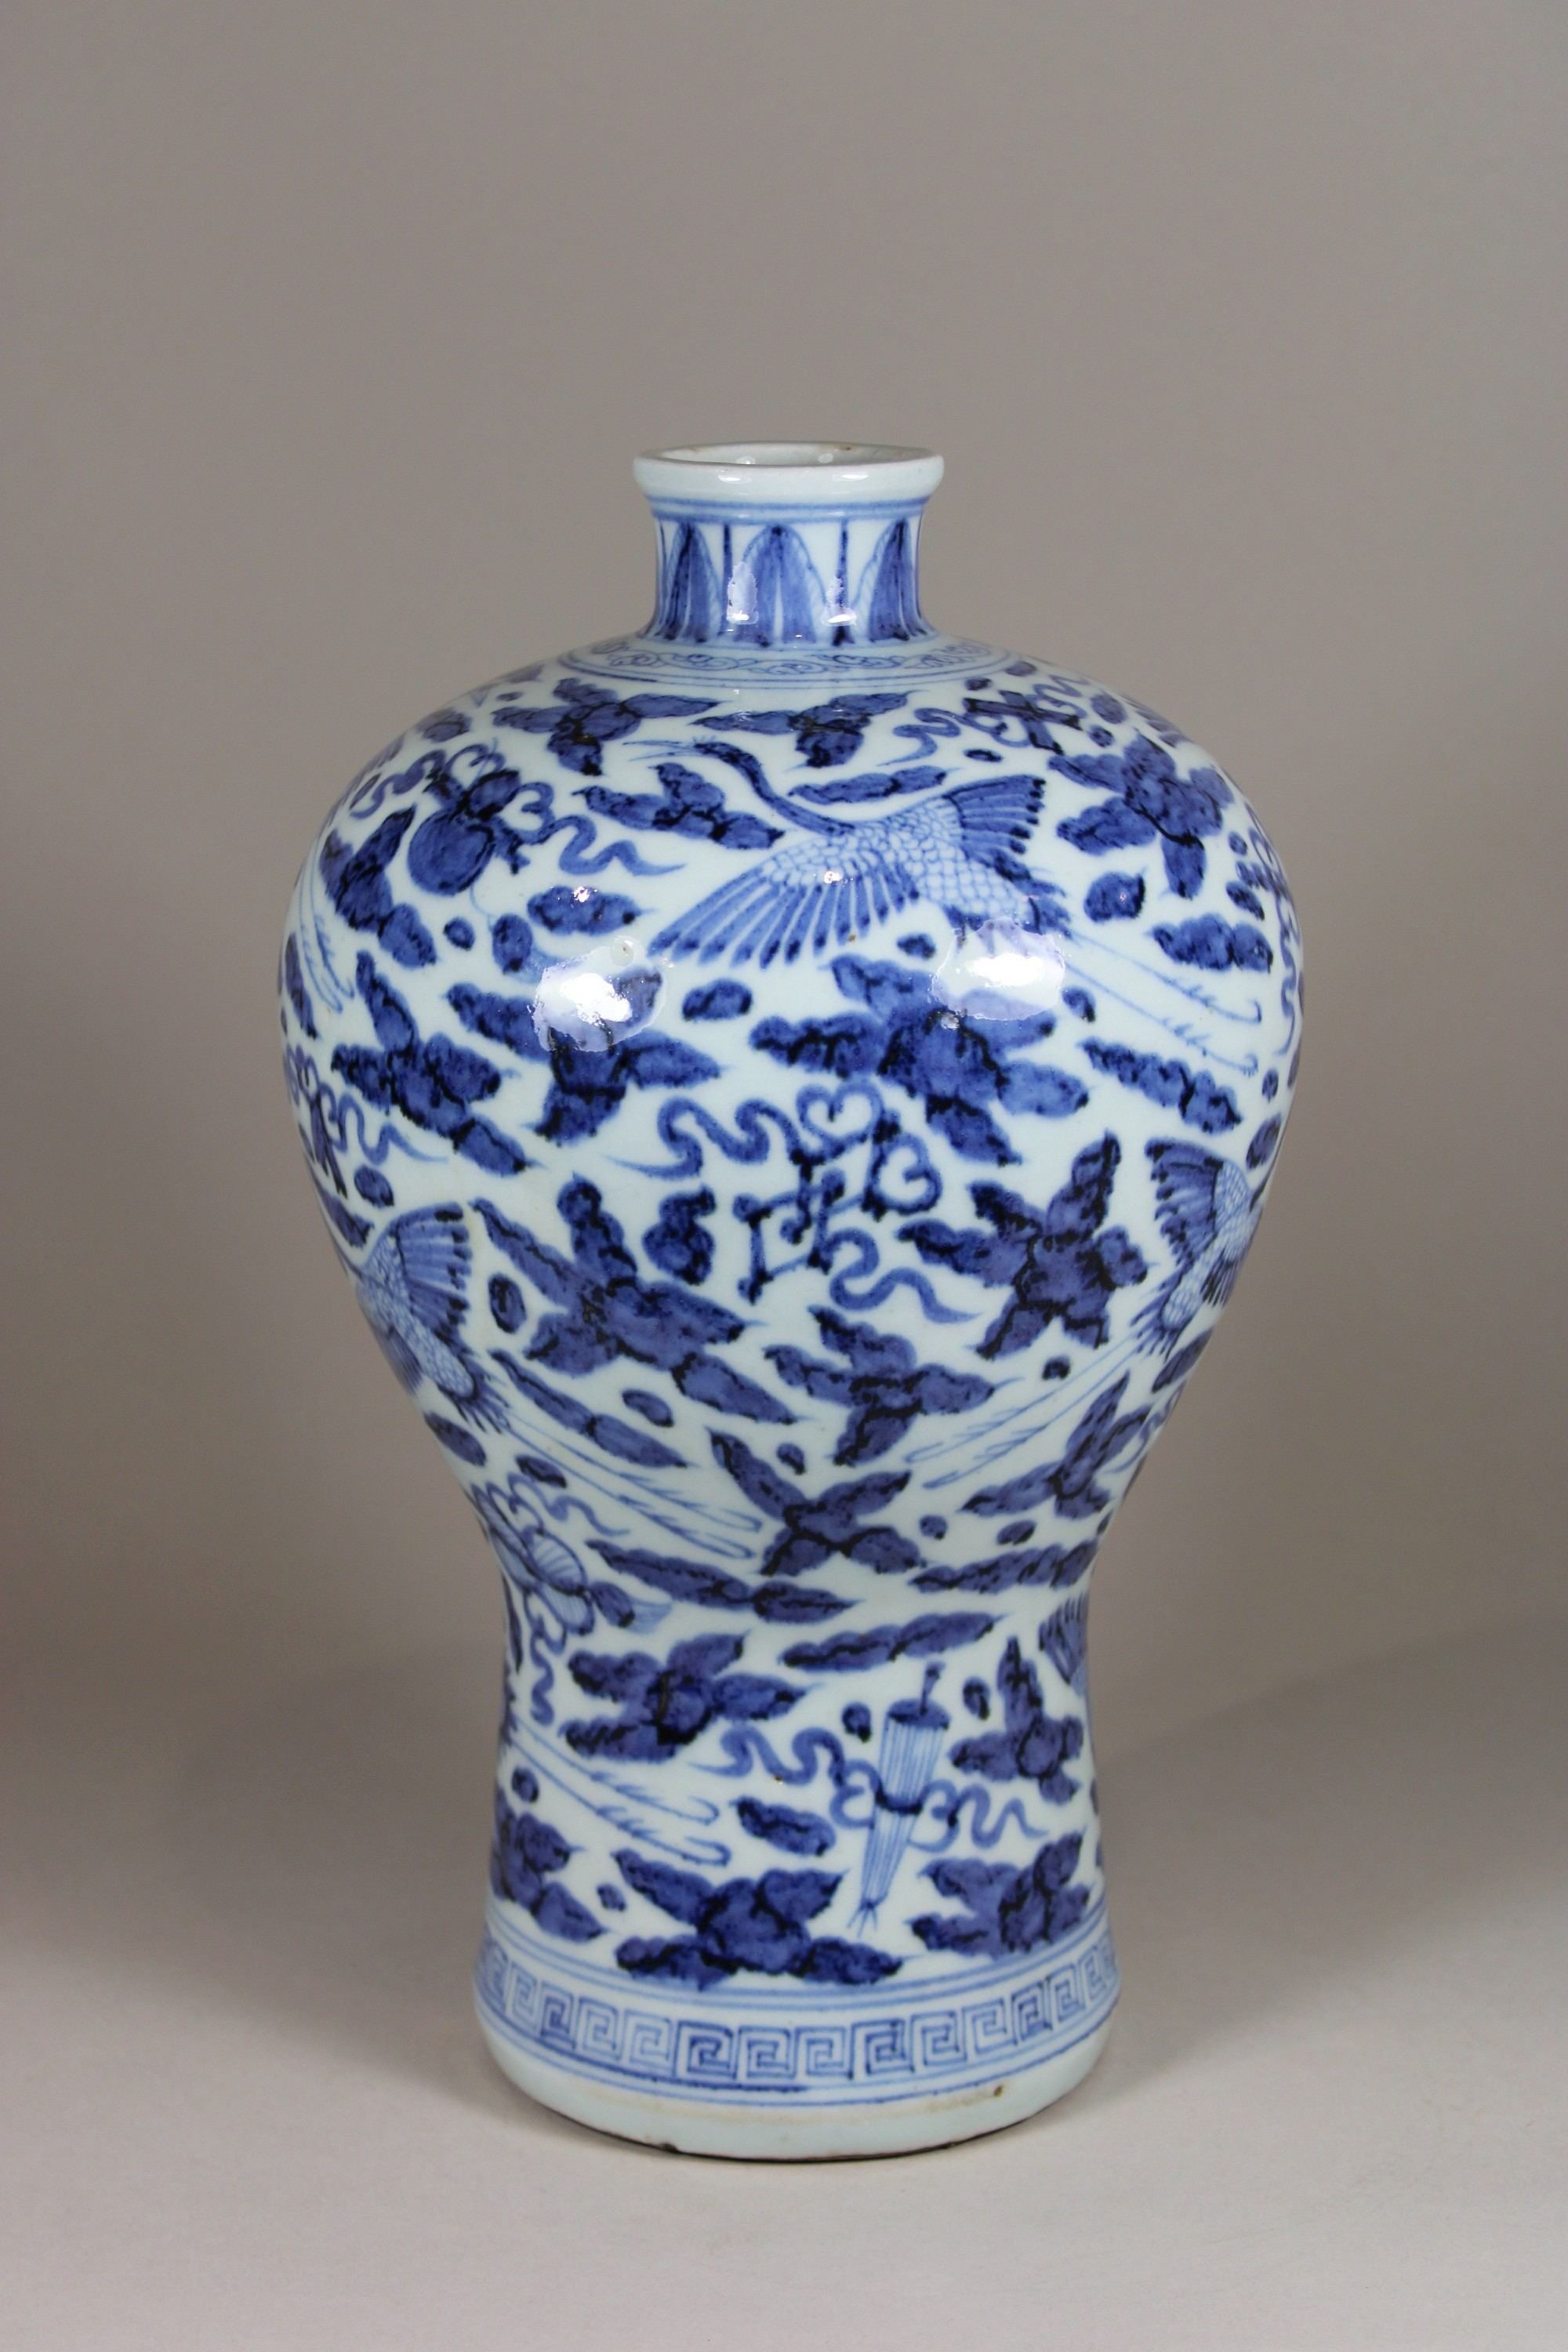 Meiping Vase, China, Porzellan, ohne Marke, blau-weiß, H.: 32 cm. Guter, altersbedingter Zustand. - Image 2 of 6